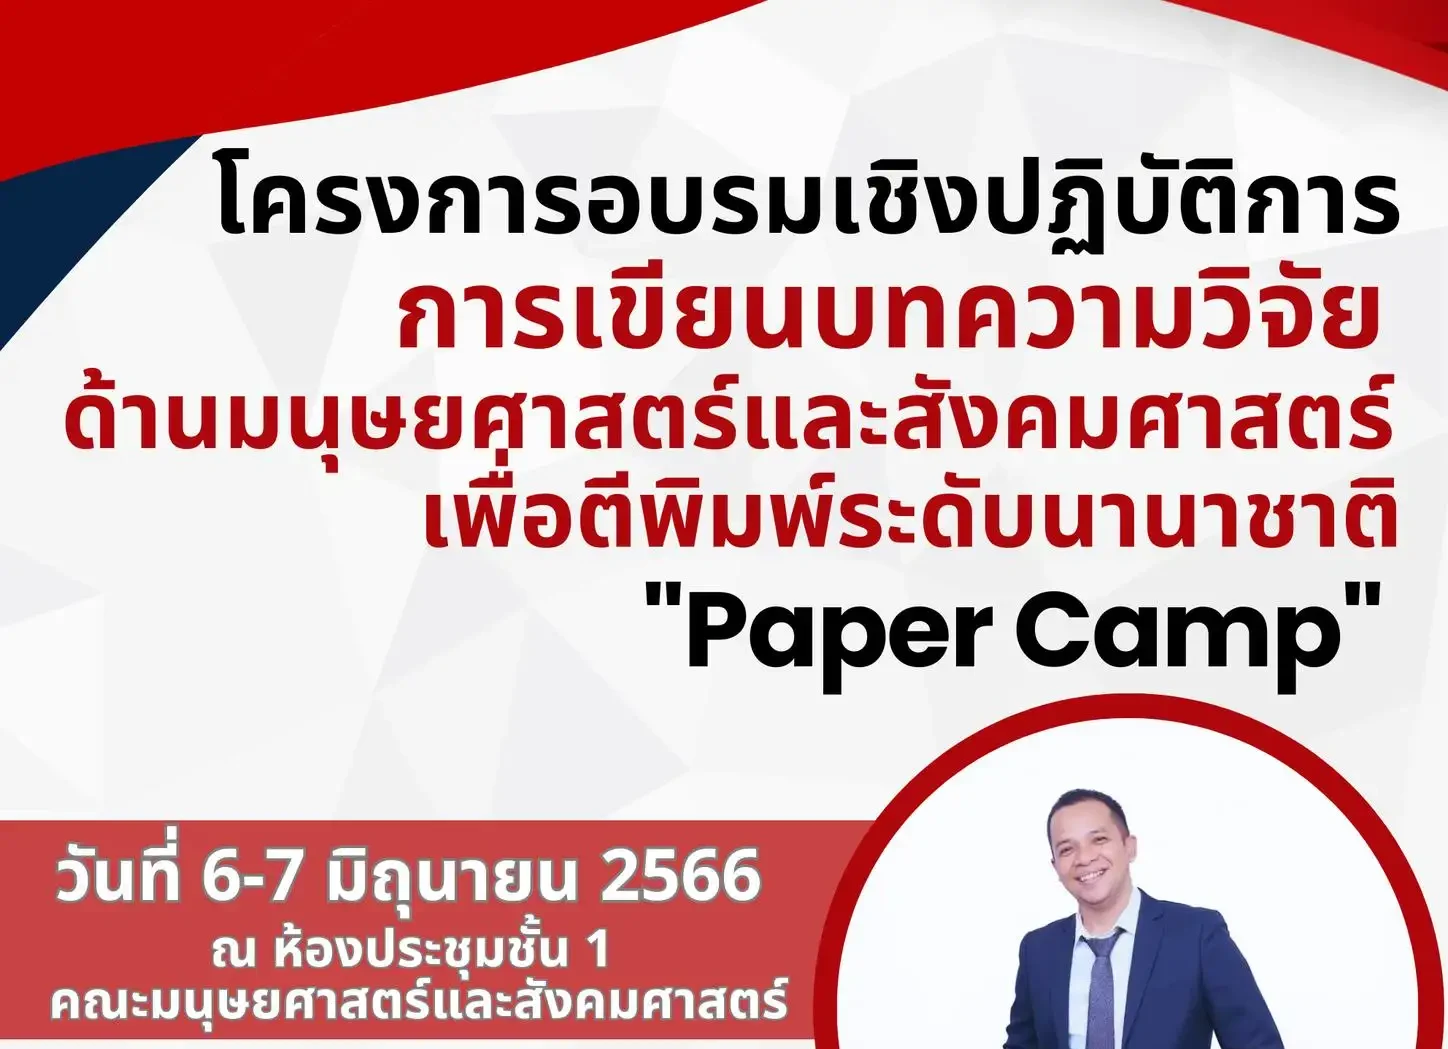 โครงการอบรมเชิงปฏิบัติการ (Paper Camp) “การเขียนบทความวิจัยด้านมนุษยศาสตร์และสังคมศาสตร์ระดับนานาชาติ”  ในวันที่ 6-7 มิถุนายน 2566